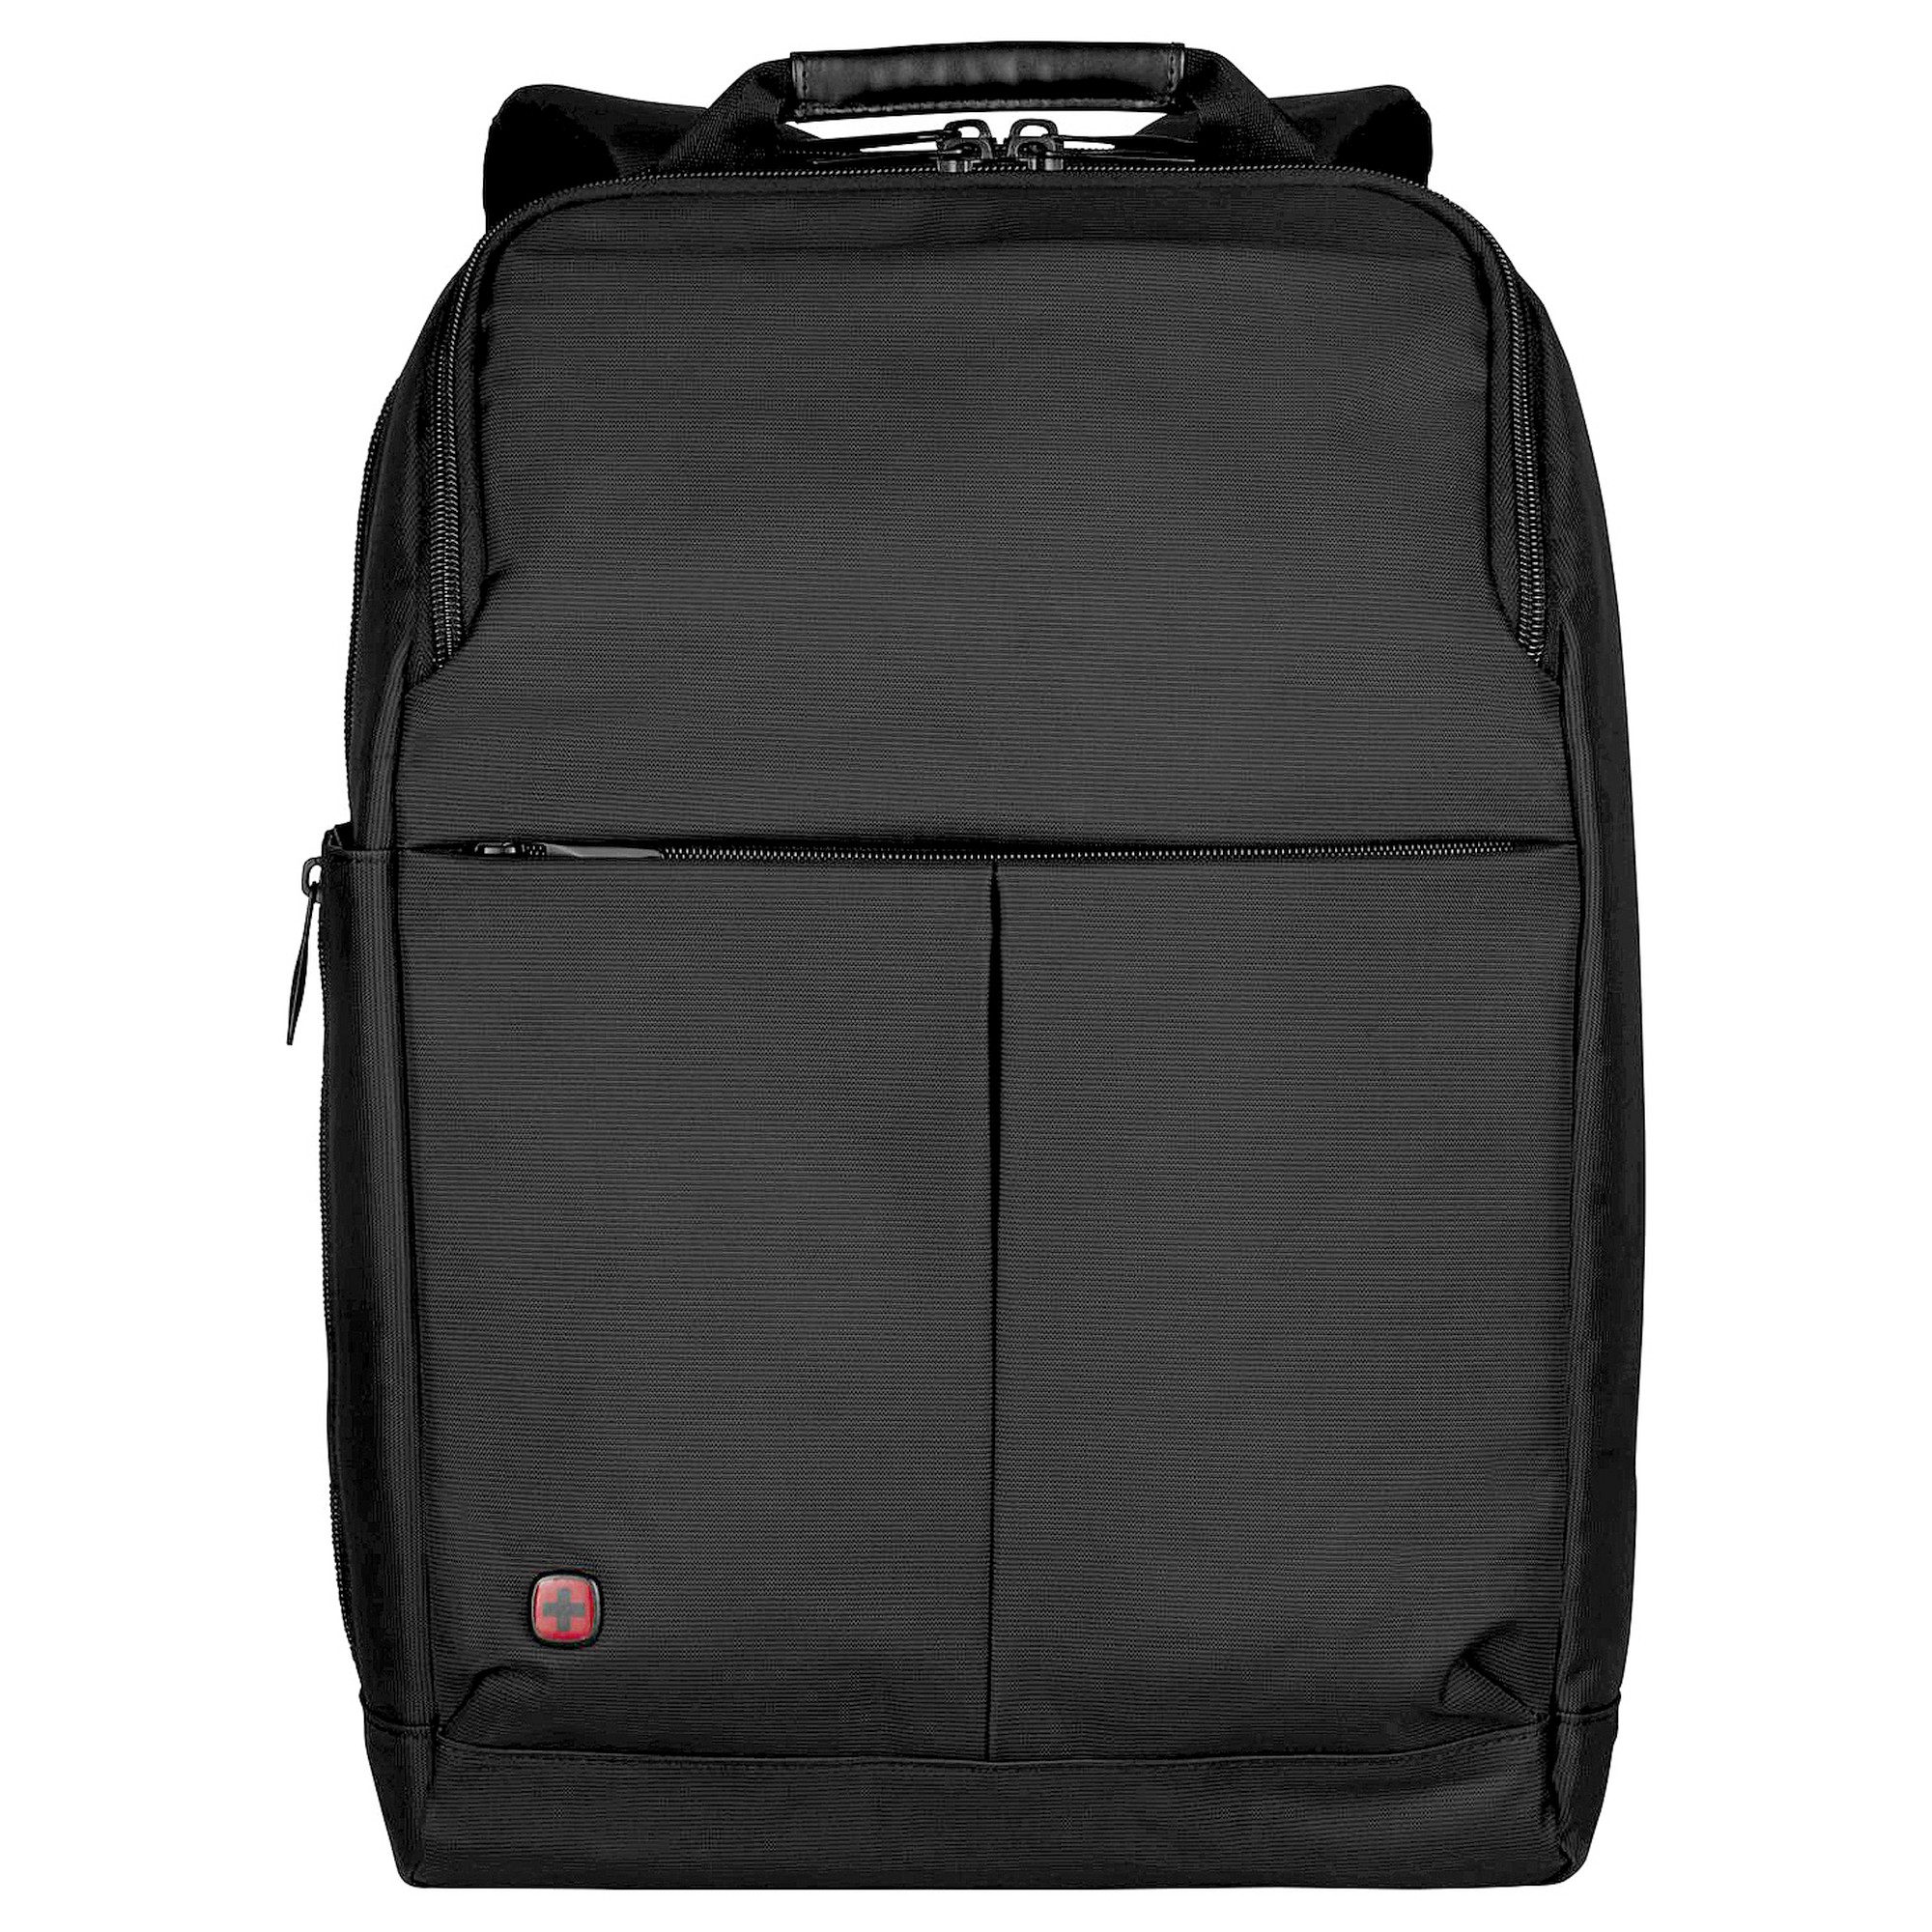 Сумка для ноутбука Wenger Reload 16 44 cm, черный сумка для ноутбука wenger reload 16 44 cm черный